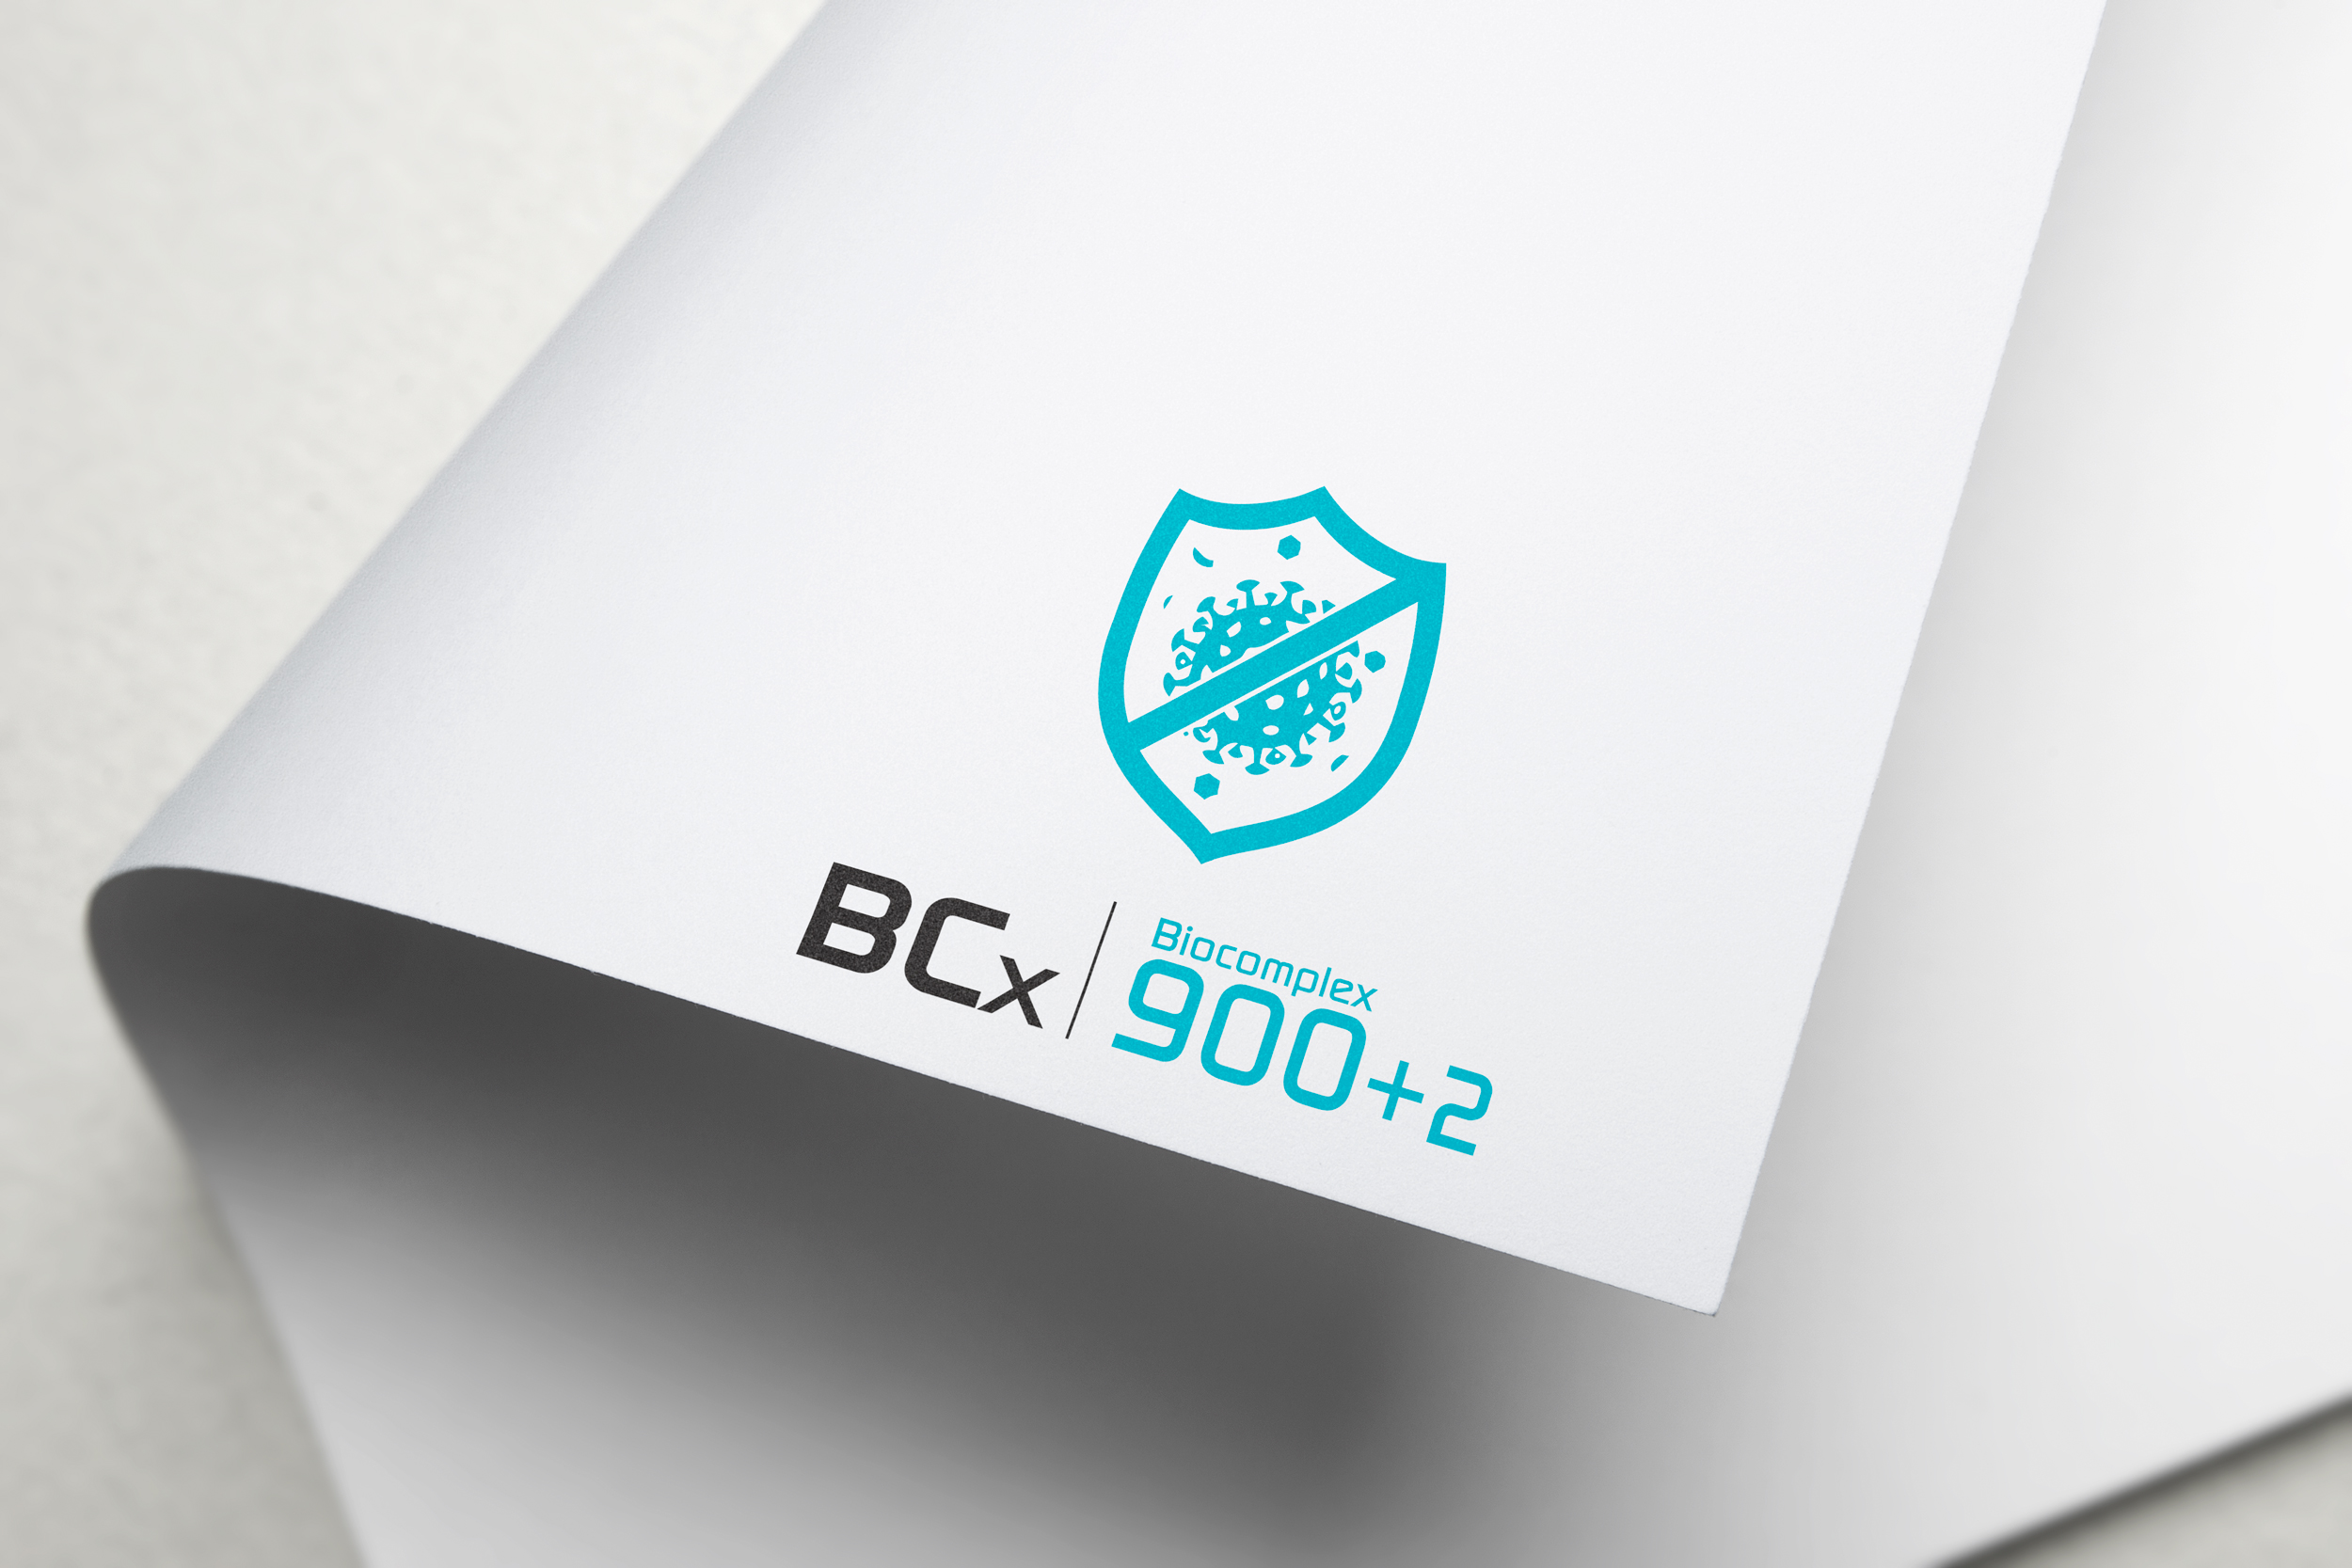 bcx900+2